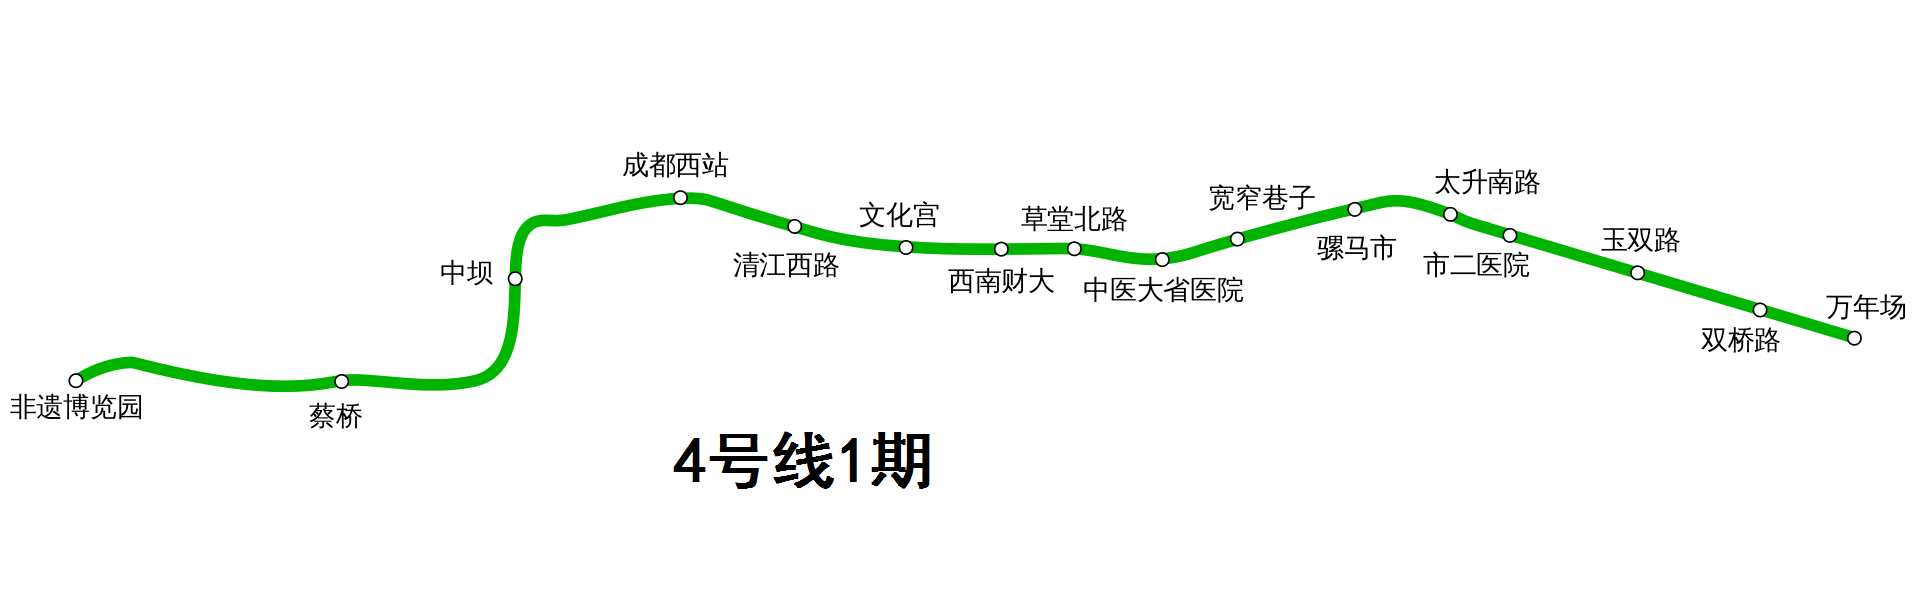 地铁4号线地图图片